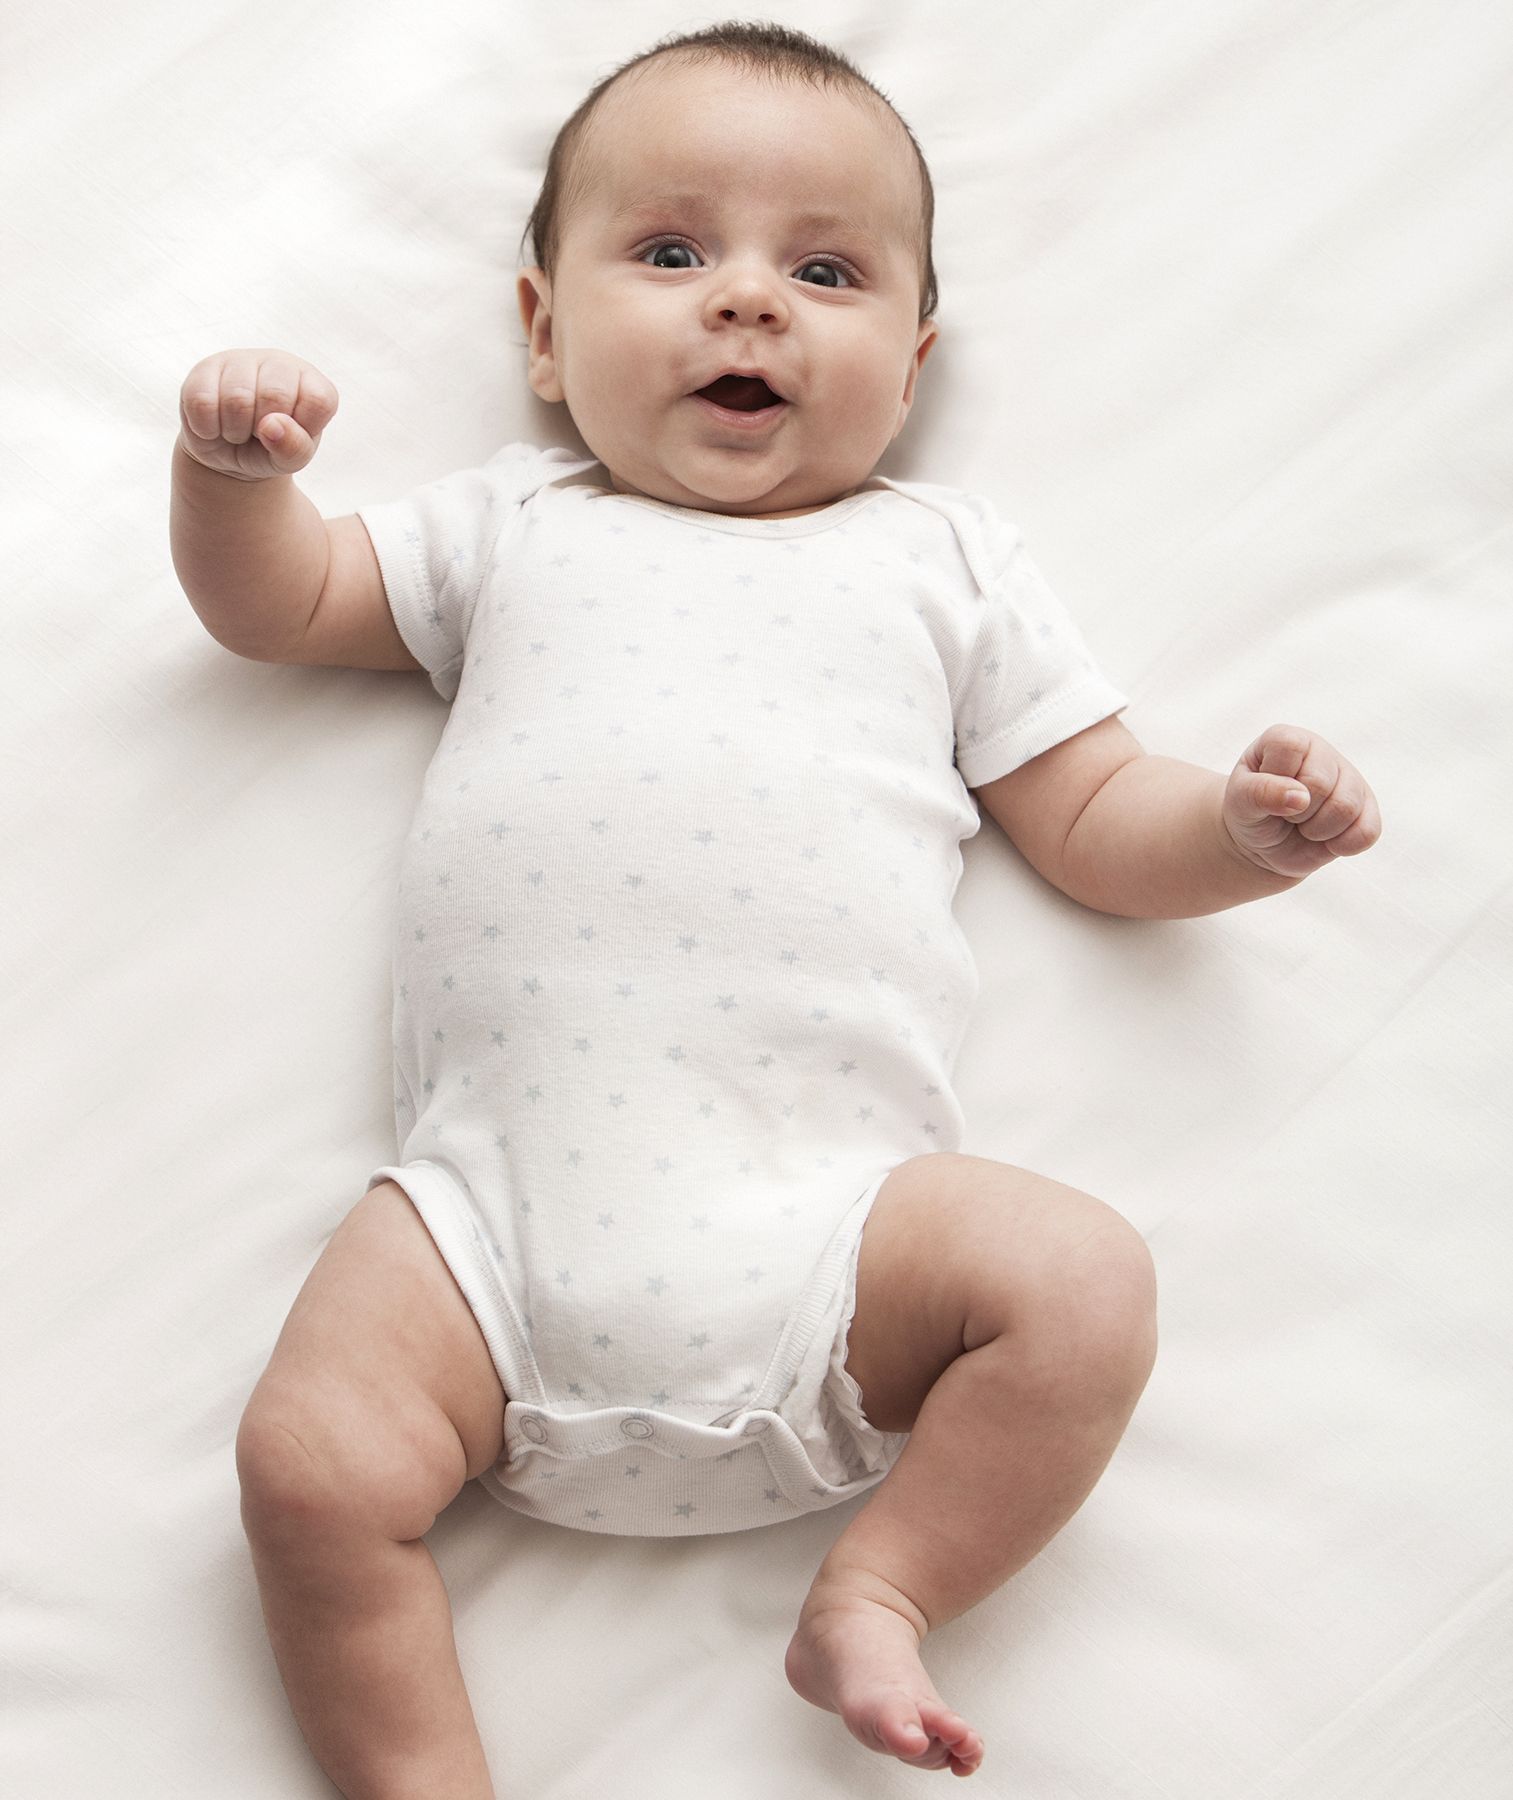 Hvorfor babyer født i september er mere succesrige, ifølge videnskaben